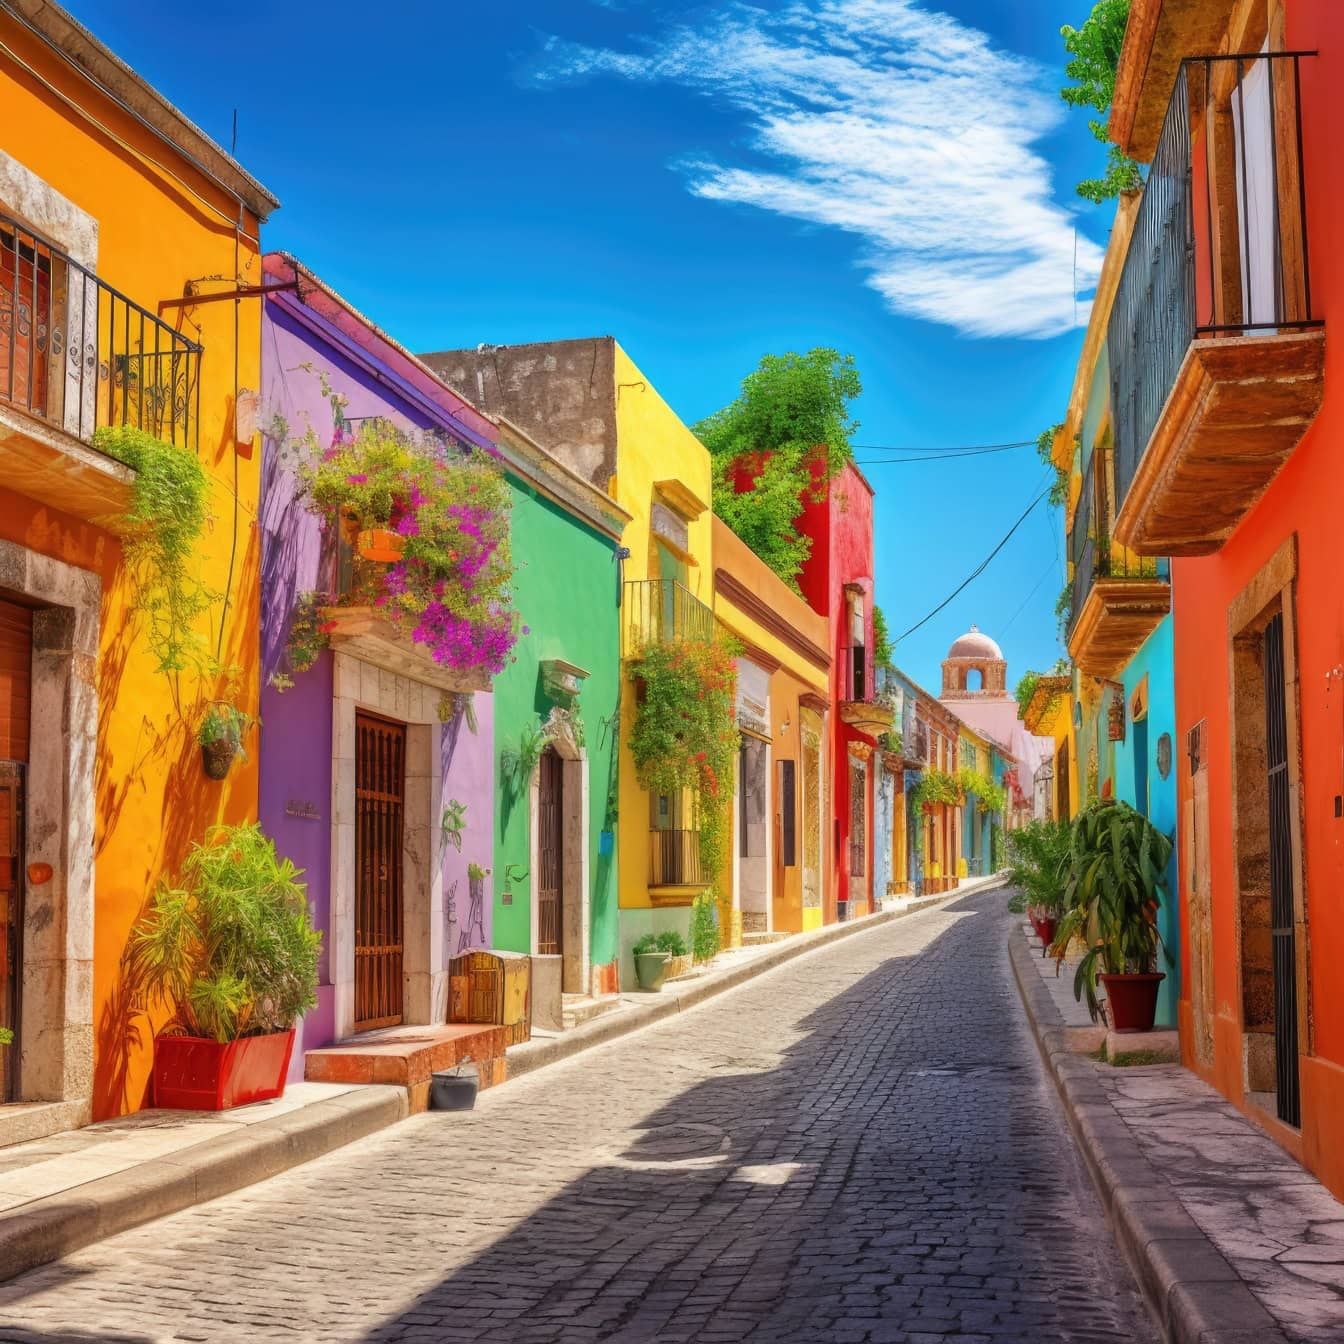 Grafiikka meksikolaisesta kadusta kaupungin historiallisessa osassa, jossa on taloja kirkkaissa väreissä